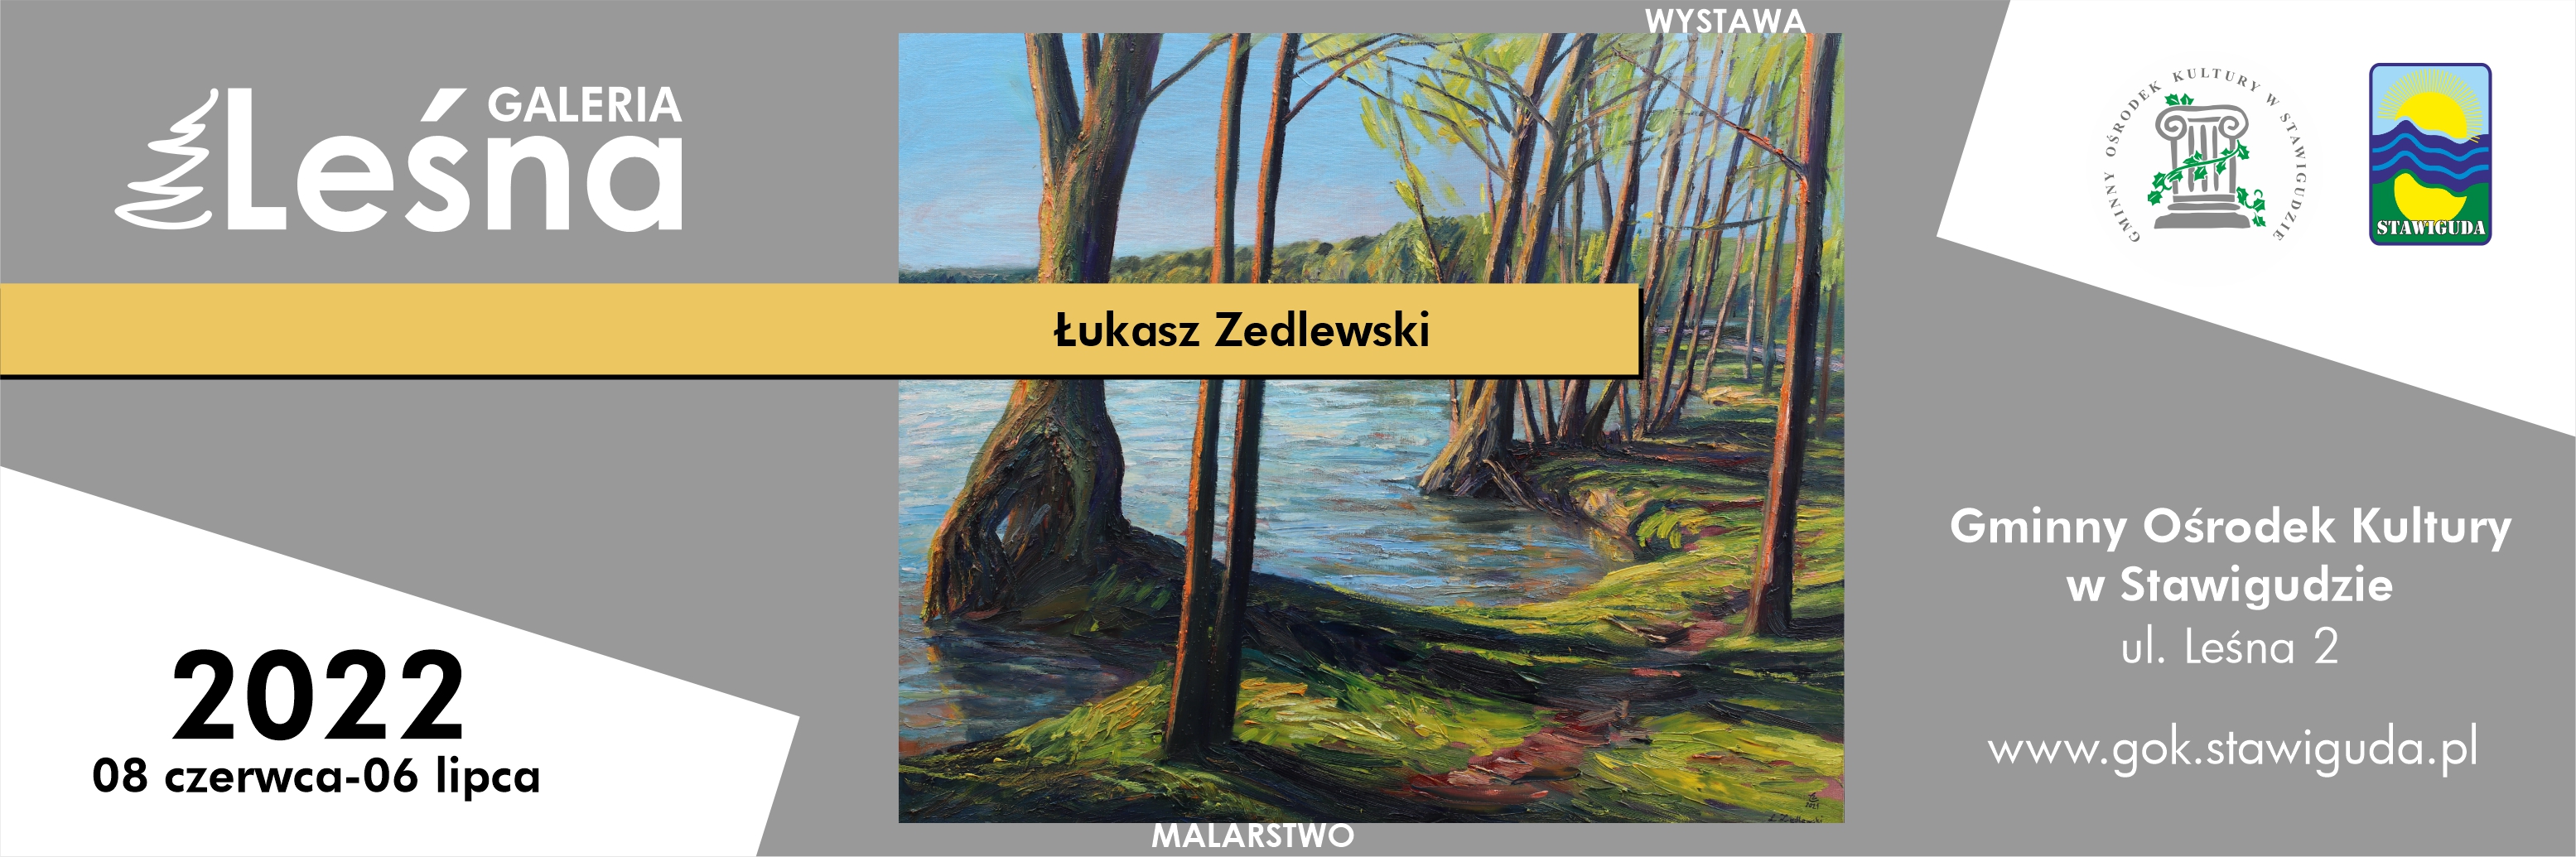 Wystawa malarstwa Łukasza Zedlewskiego w Galerii Leśnej